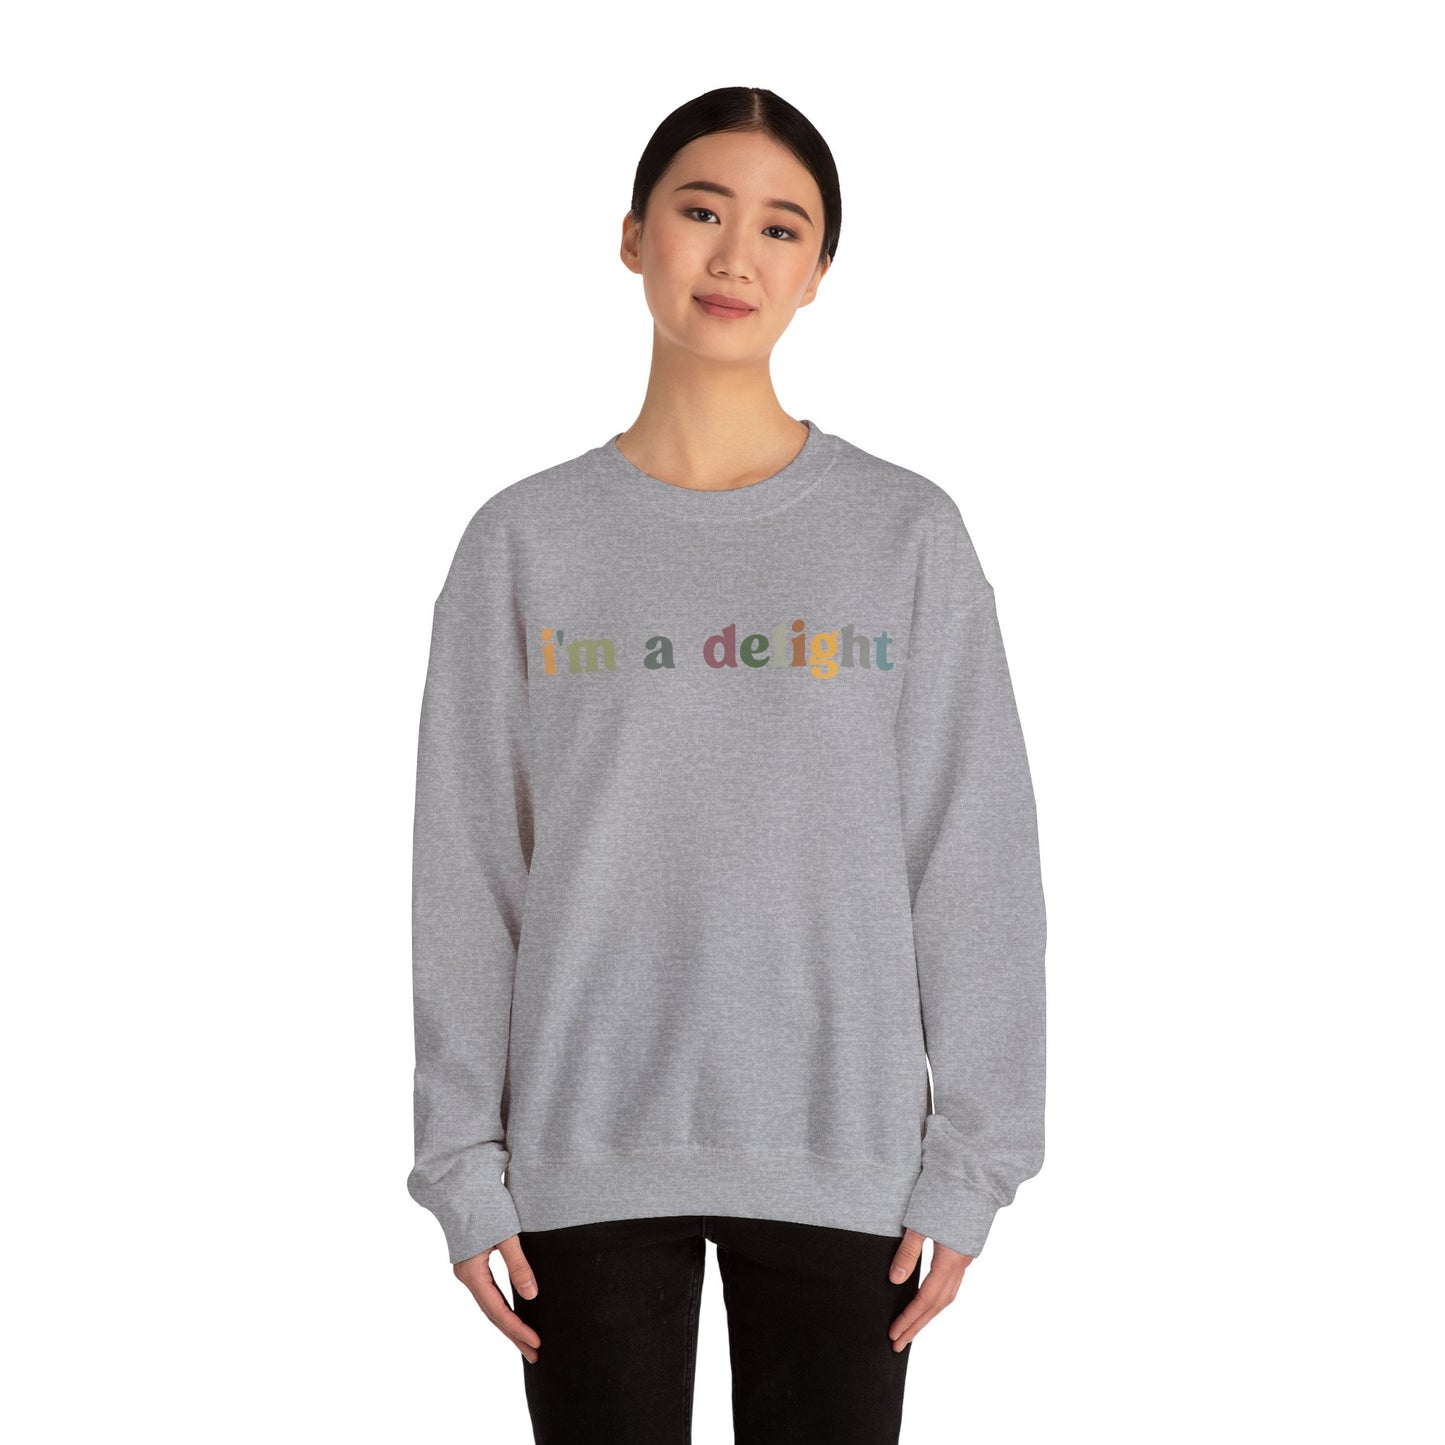 I'm A Delight Sweatshirt, Cute Sarcastic T-Sweatshirt, Sarcastic Self Love Sweatshirt, Sarcasm Sweatshirt, Attitude Sweatshirt, S1081